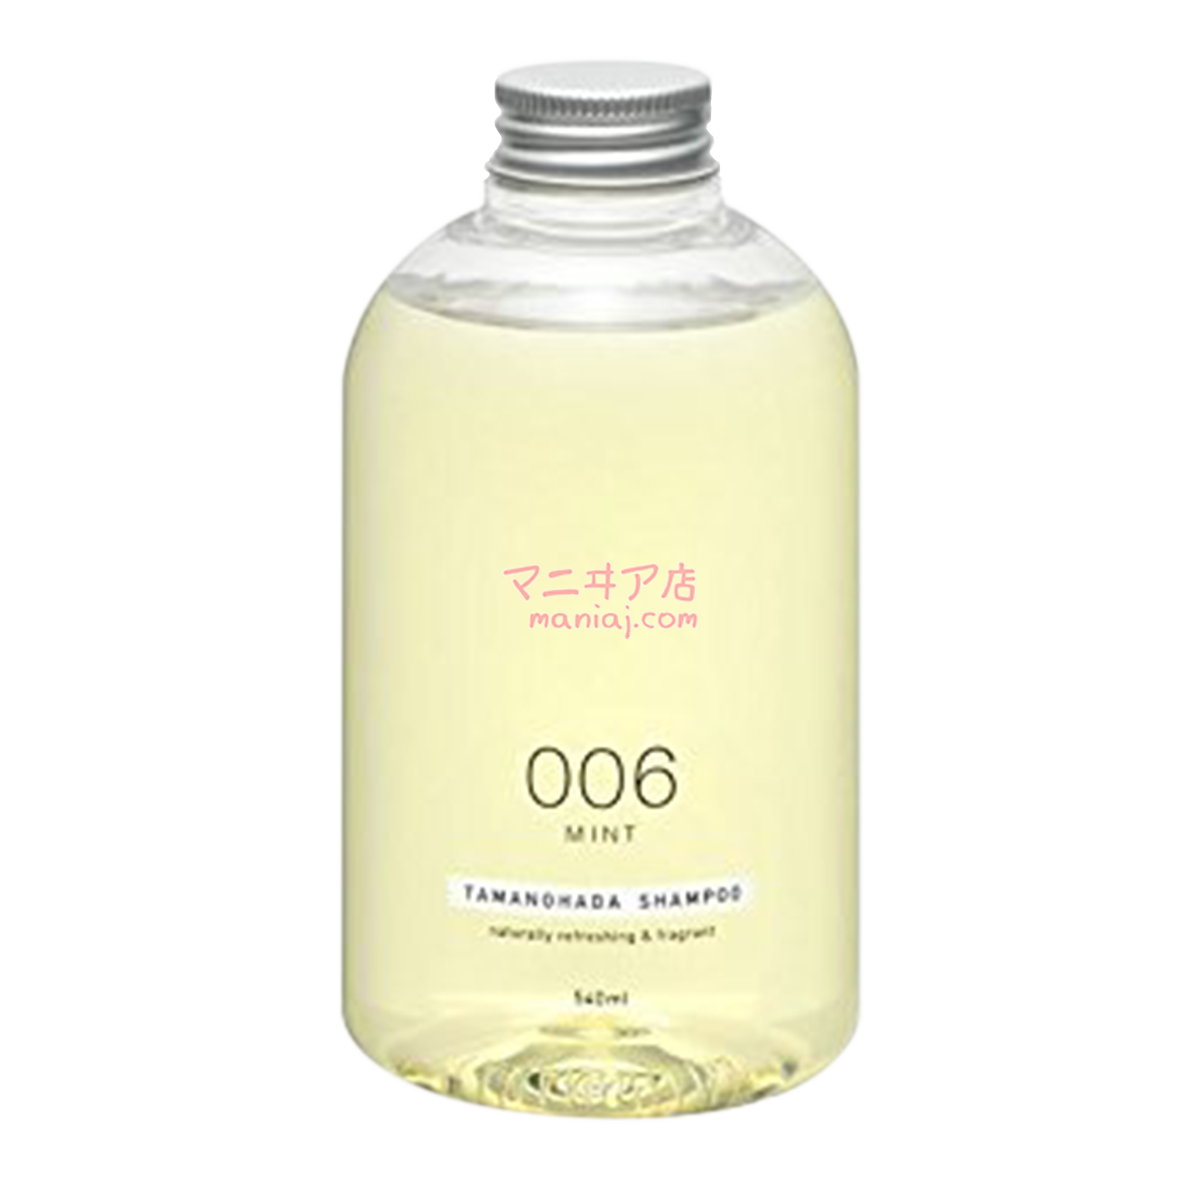 TAMANOHADA (玉の肌) 洗髪液 - 薄荷味 006